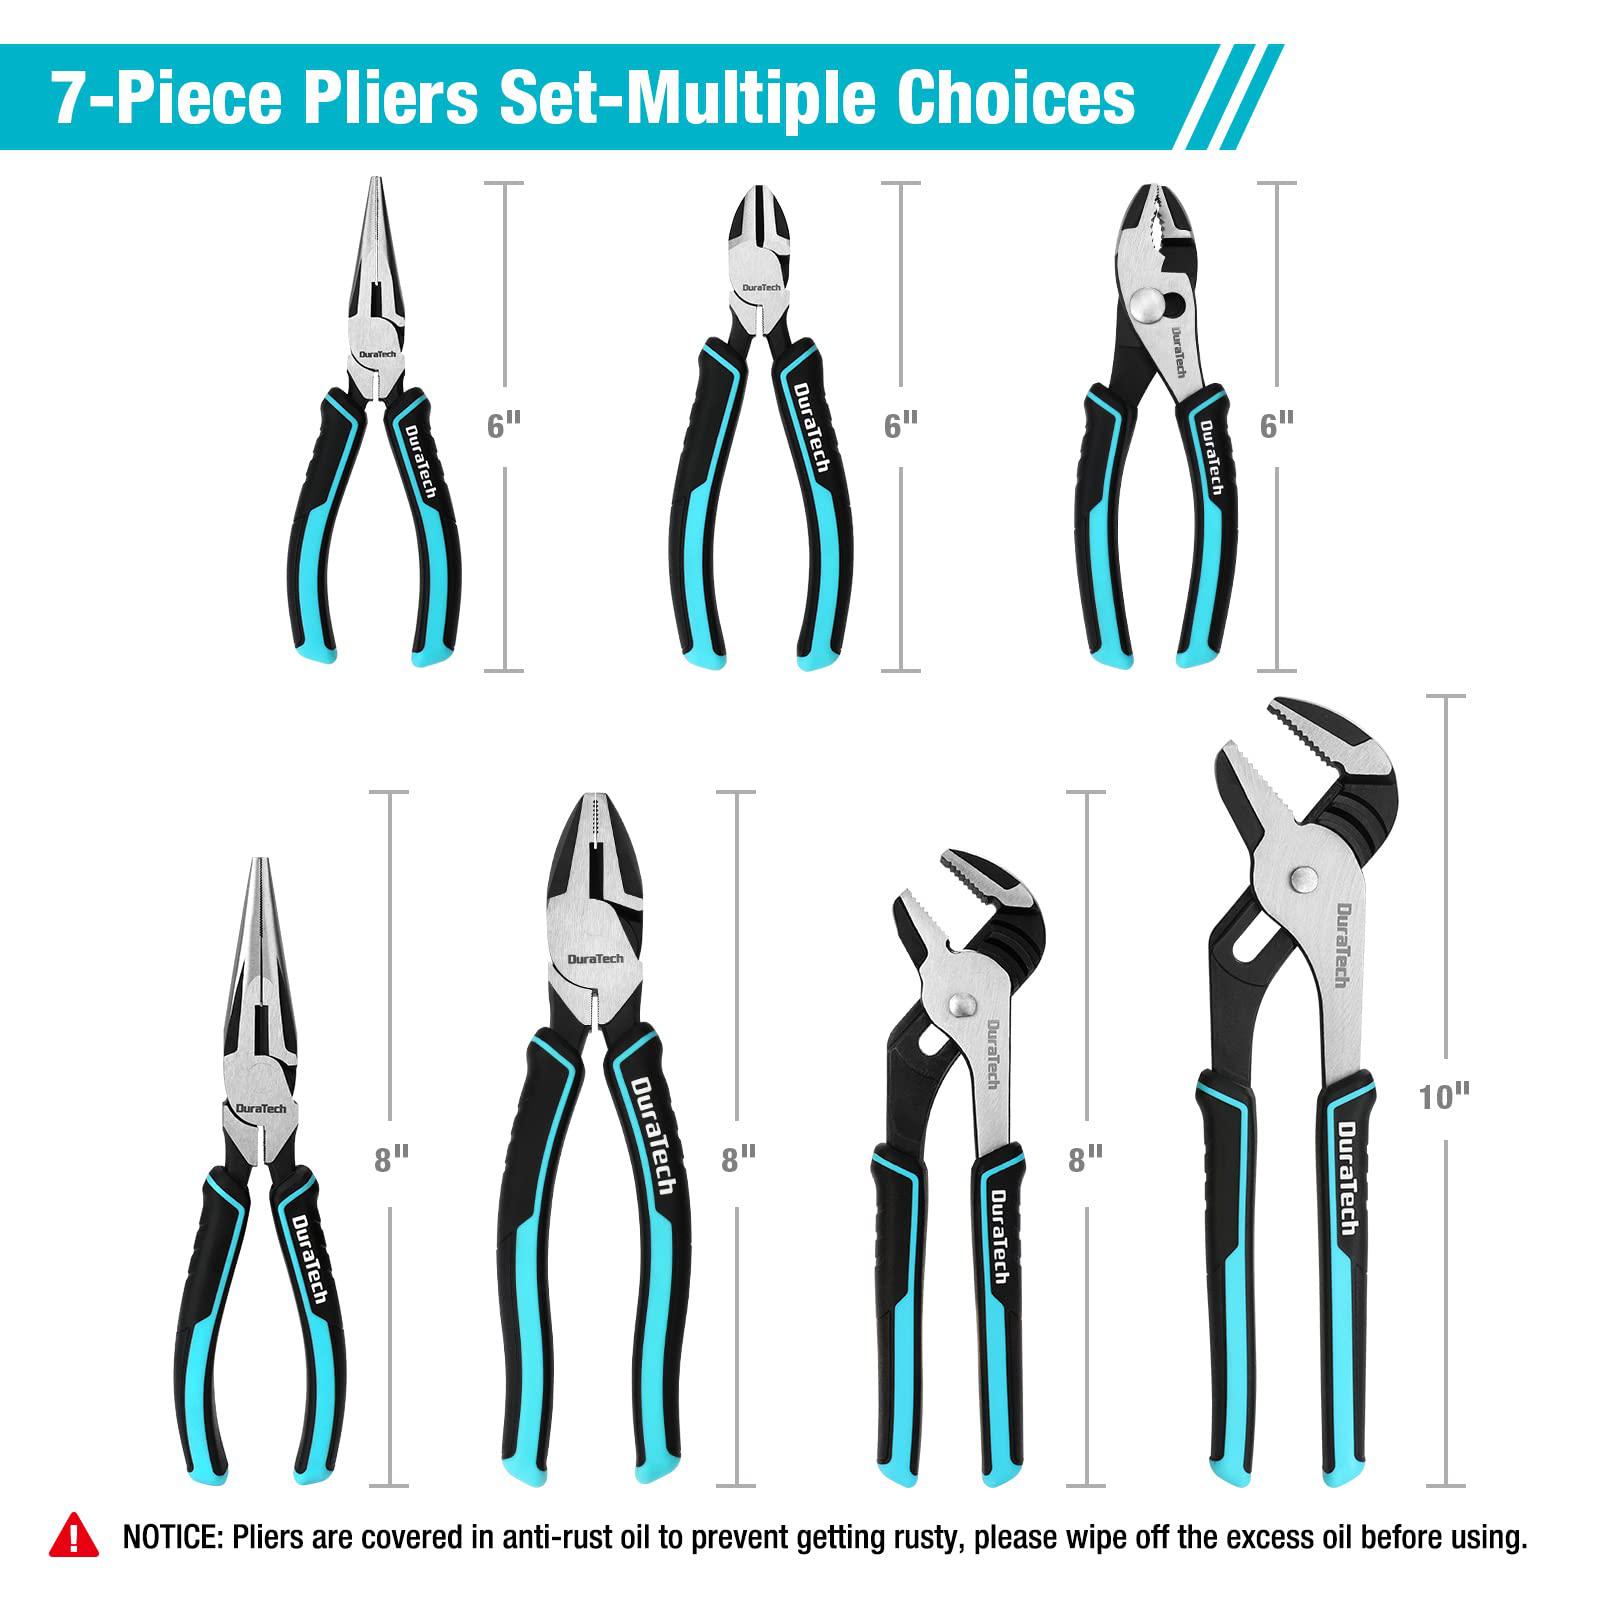 duratech 7-piece pliers set, premium cr-ni construction (10", 8" groove joint pliers, 8", 6" long needle nose, 8" linesman, 6